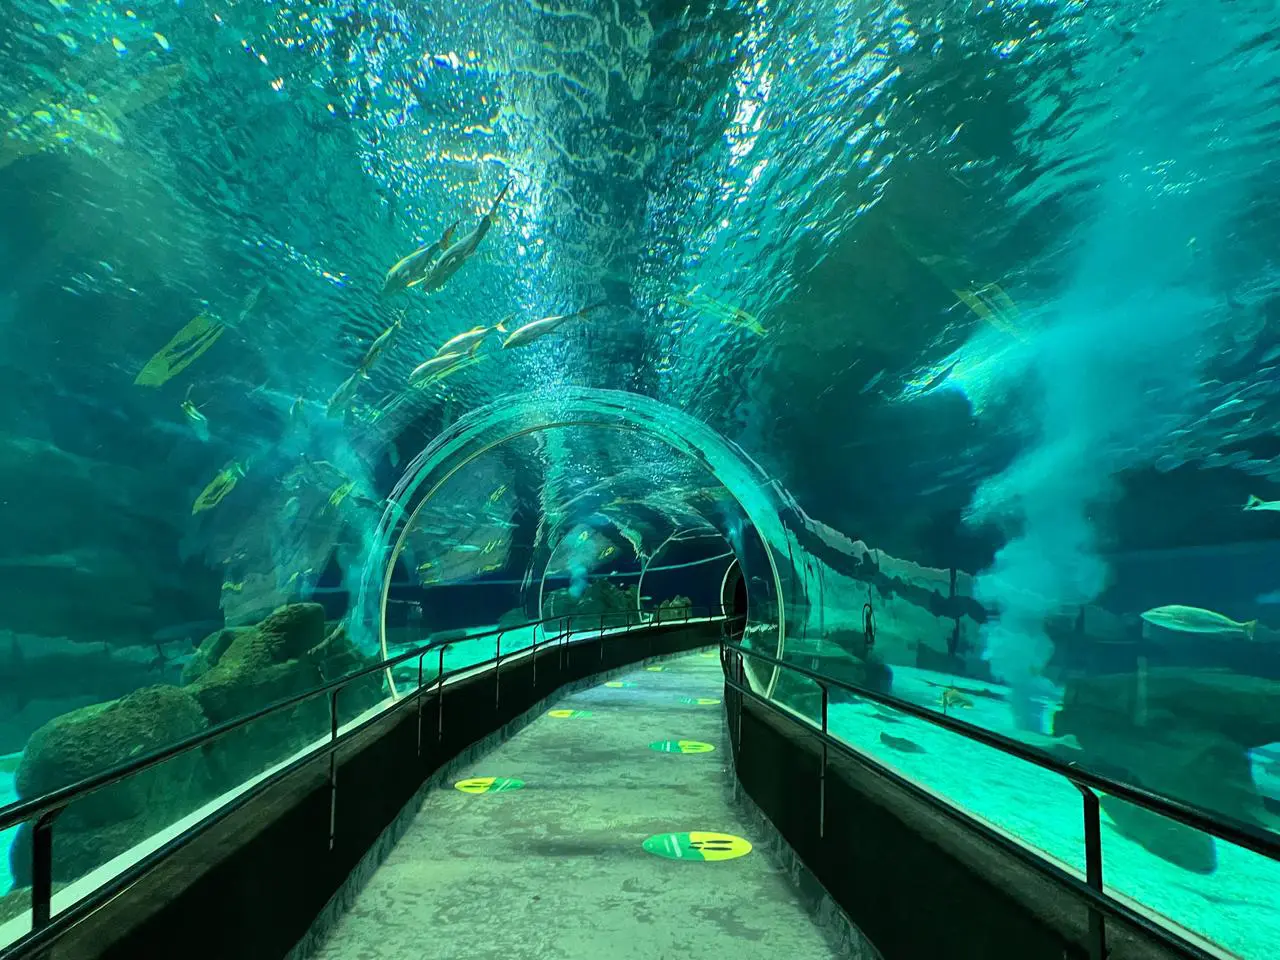 Lugares para passear com crianças no Rio de Janeiro | AquaRio é o maior museu aquático da América do Sul | Conexão123